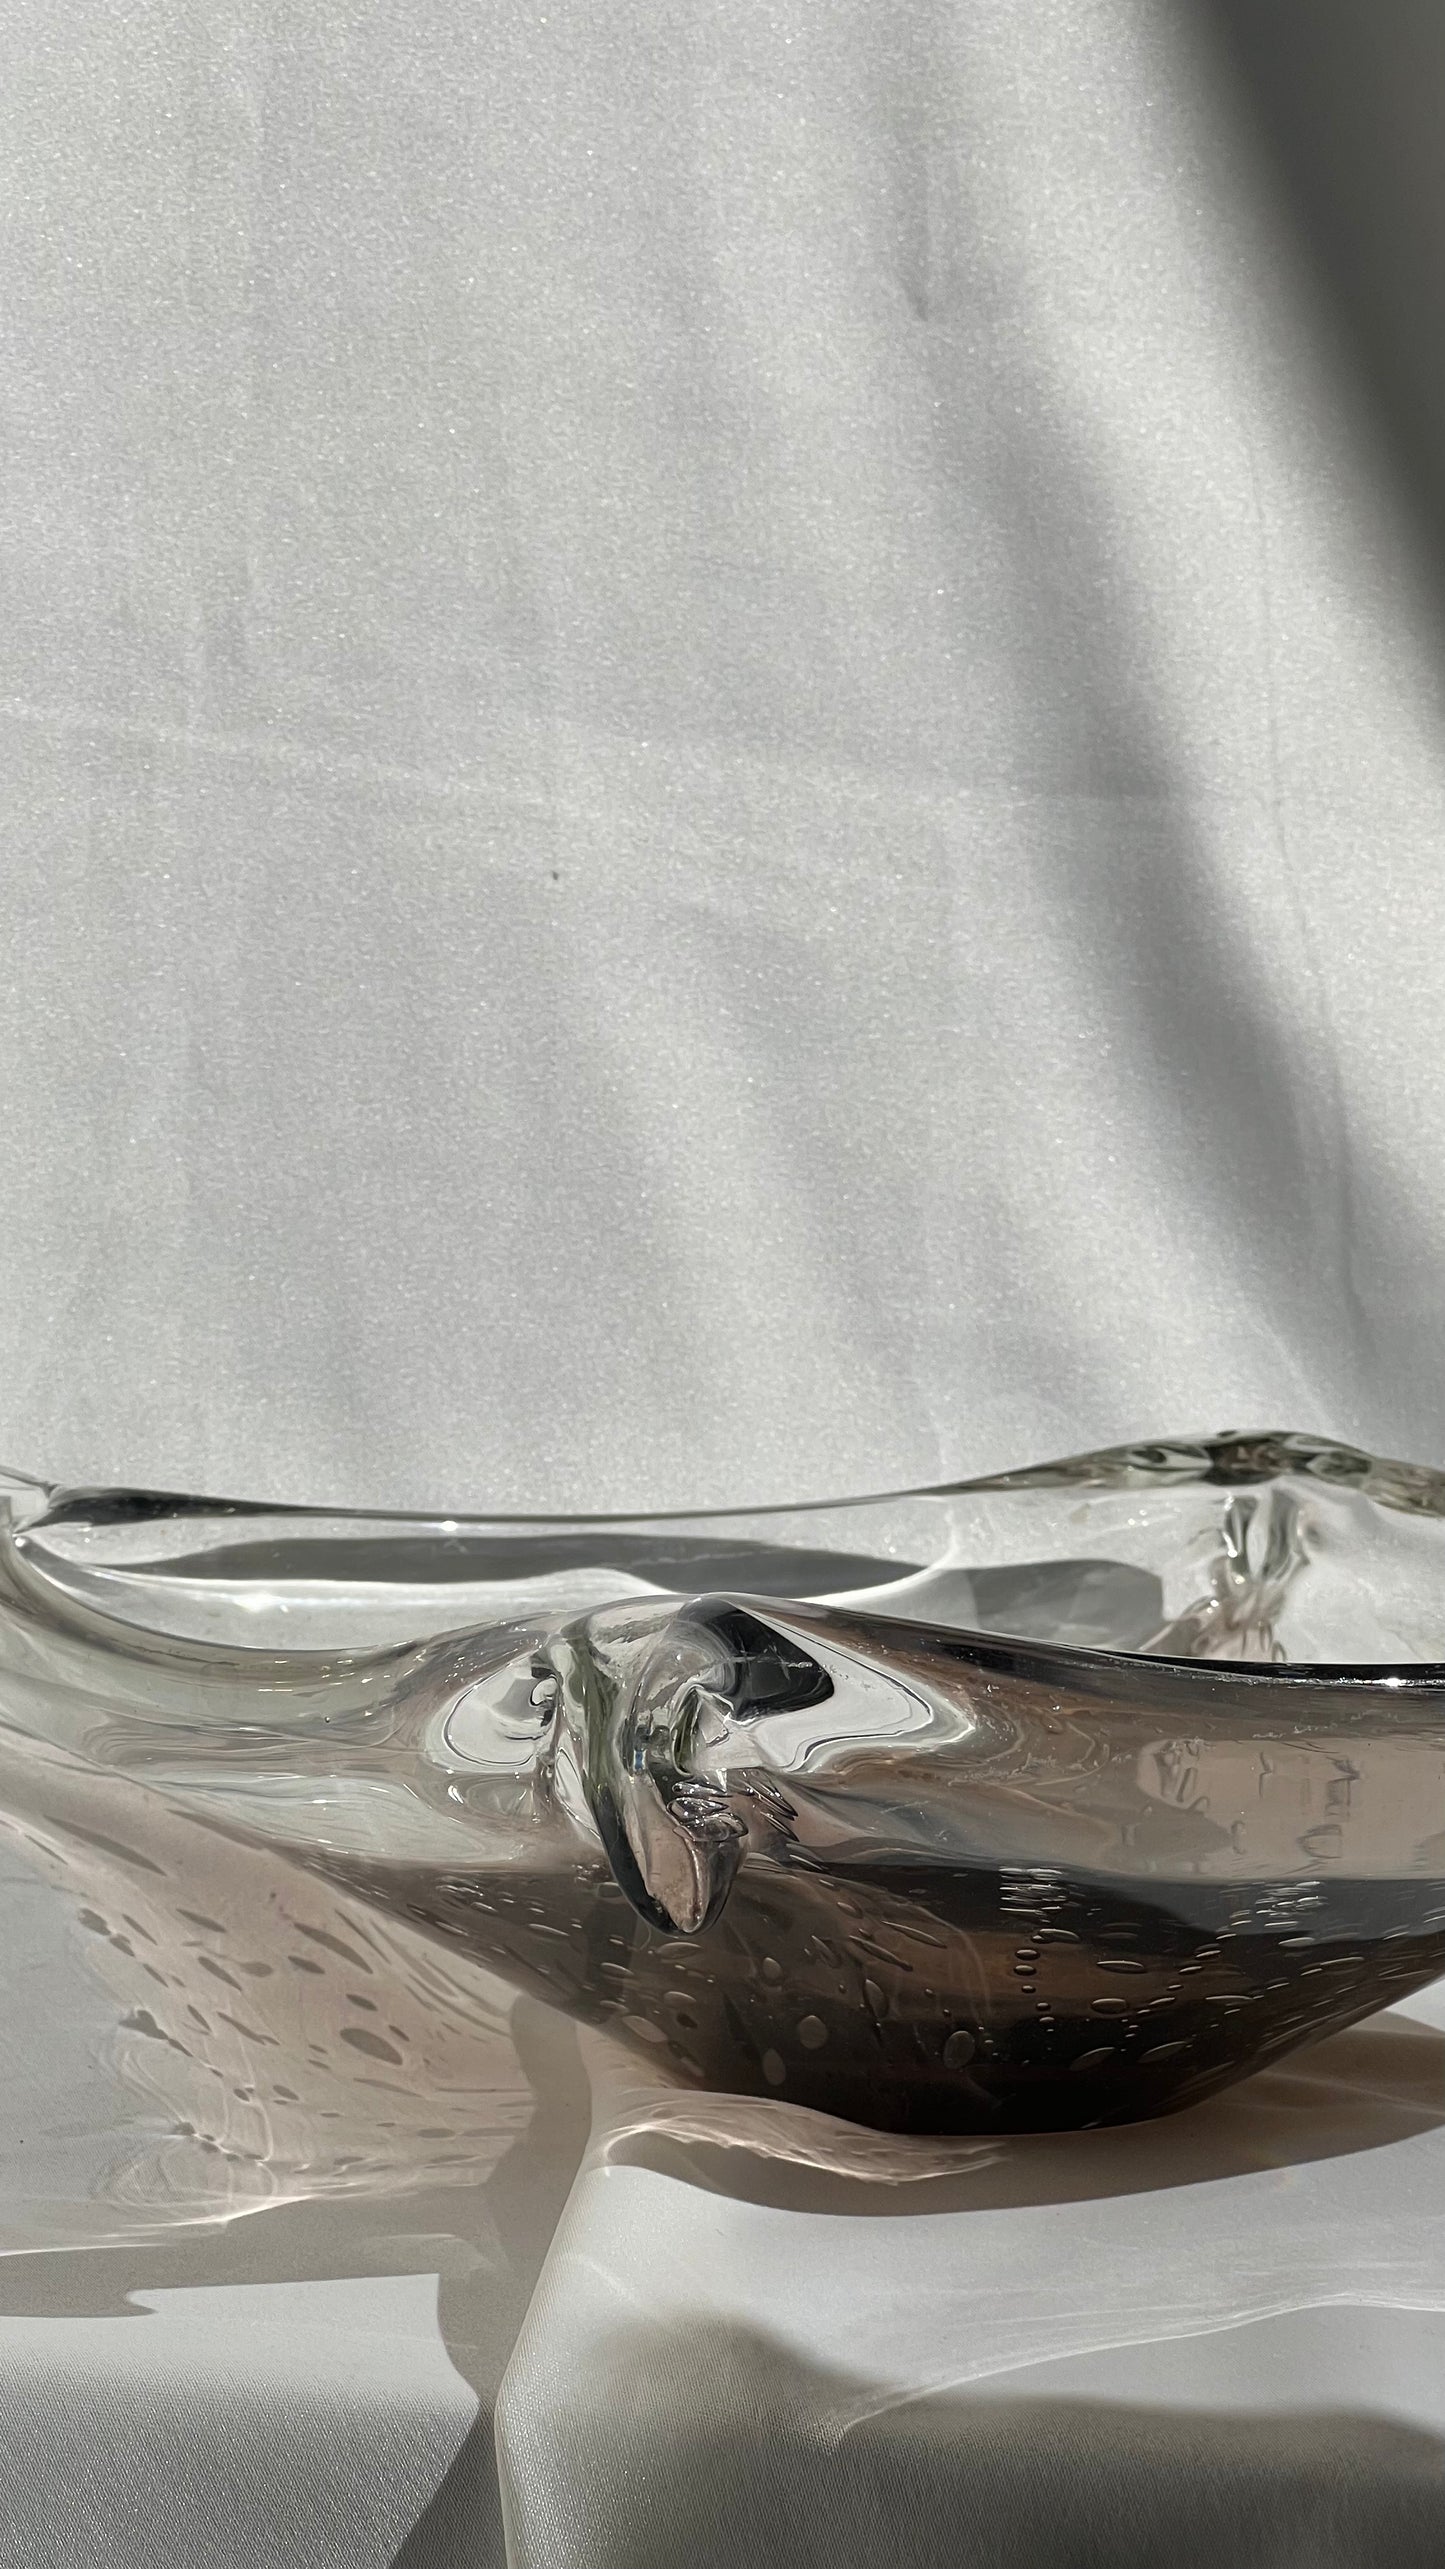 Murano glass | זכוכית מורנו